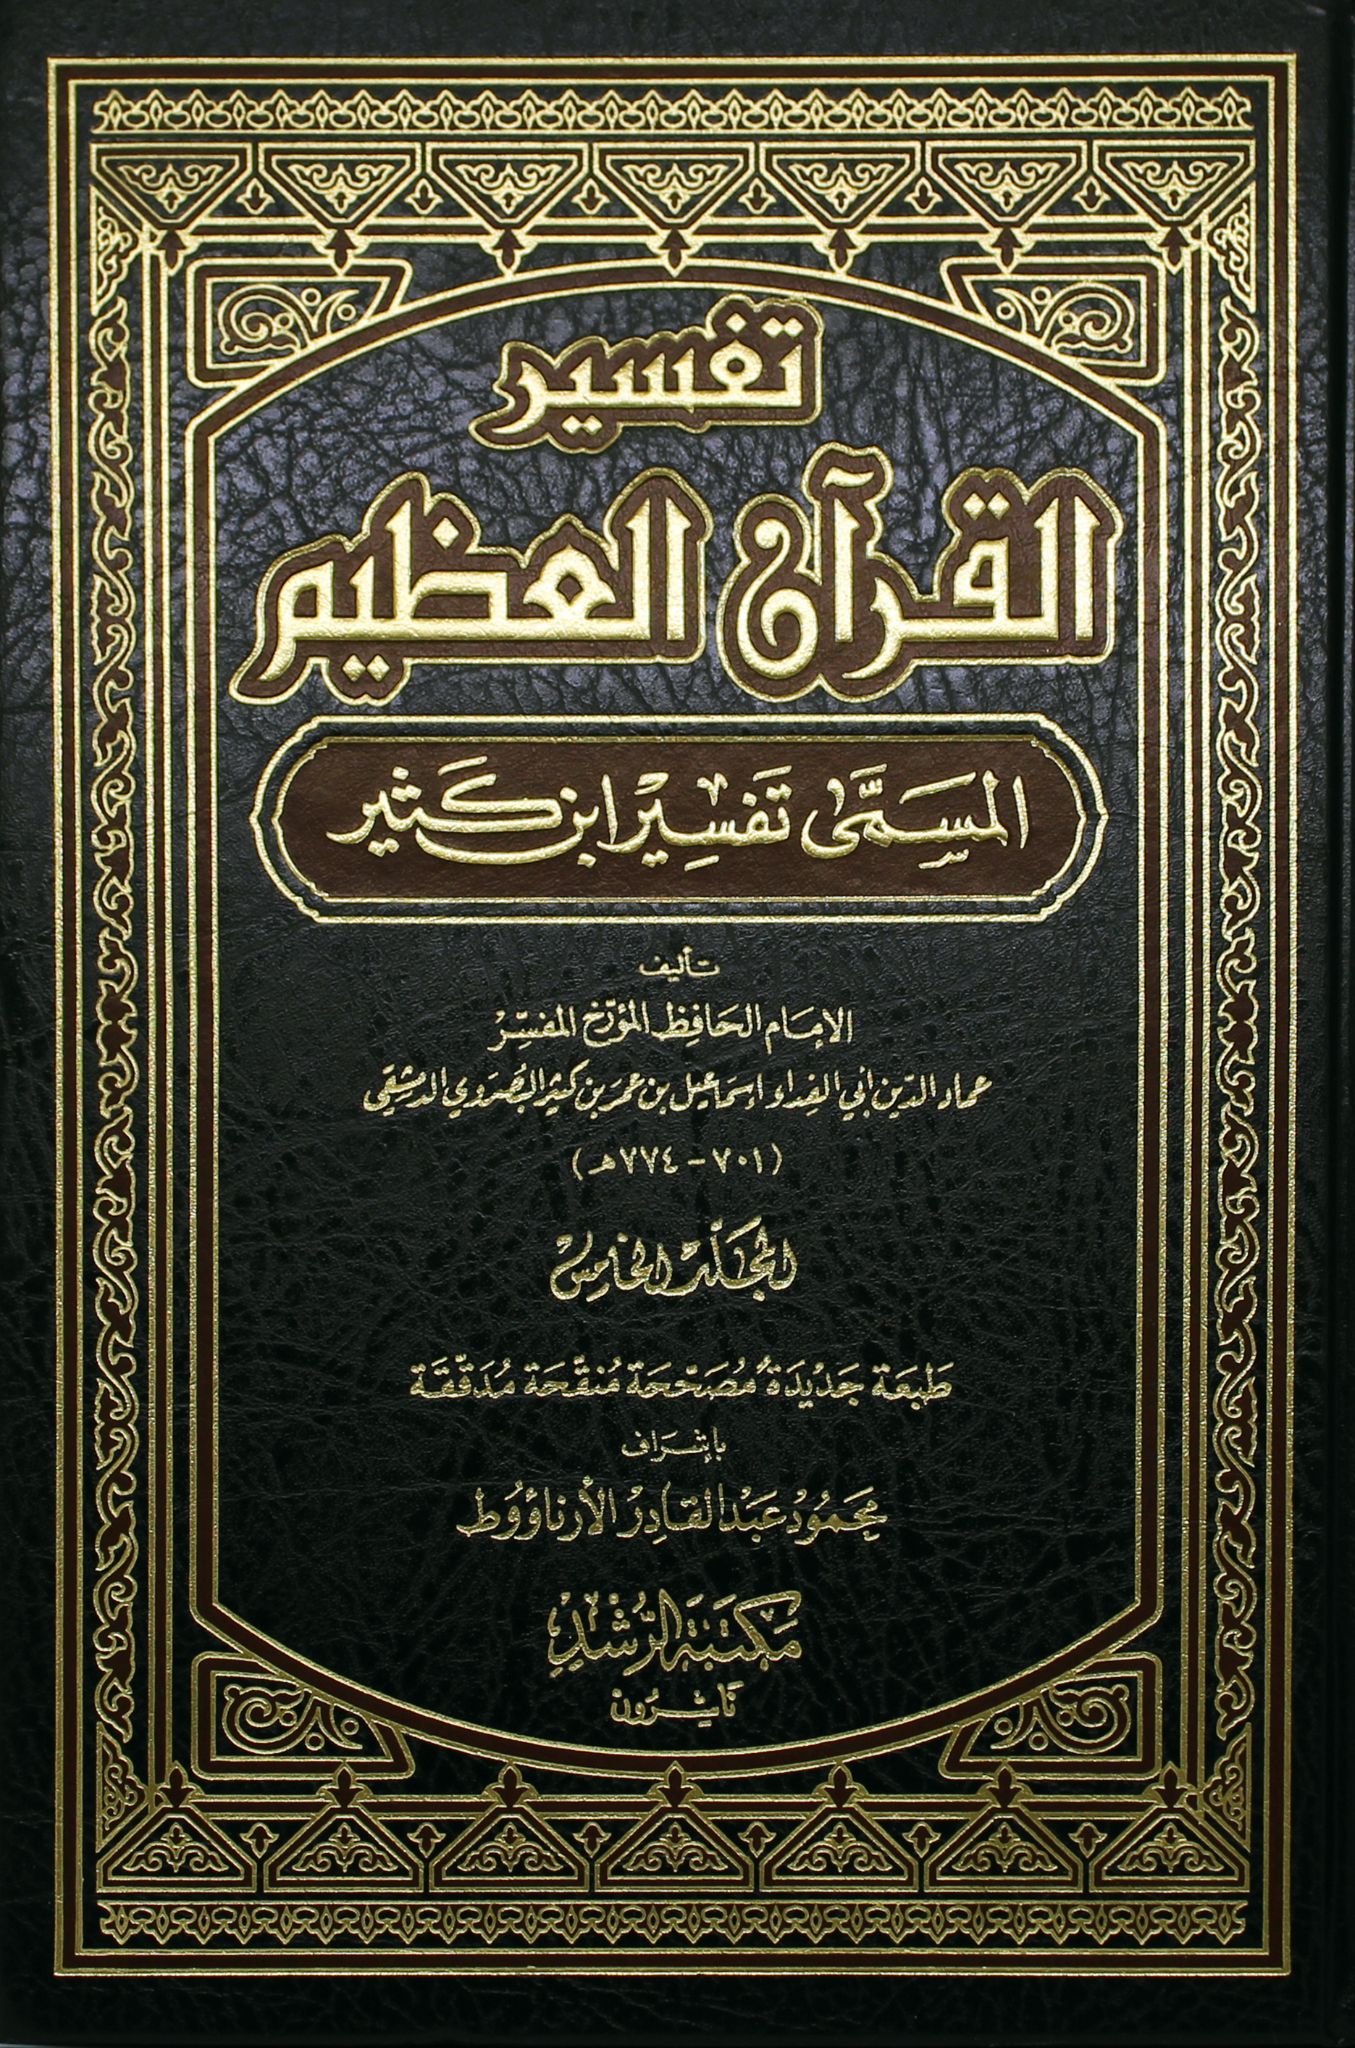 Photo of تحميل كتاب تفسير القرآن العظيم pdf  لـ ابن كثير